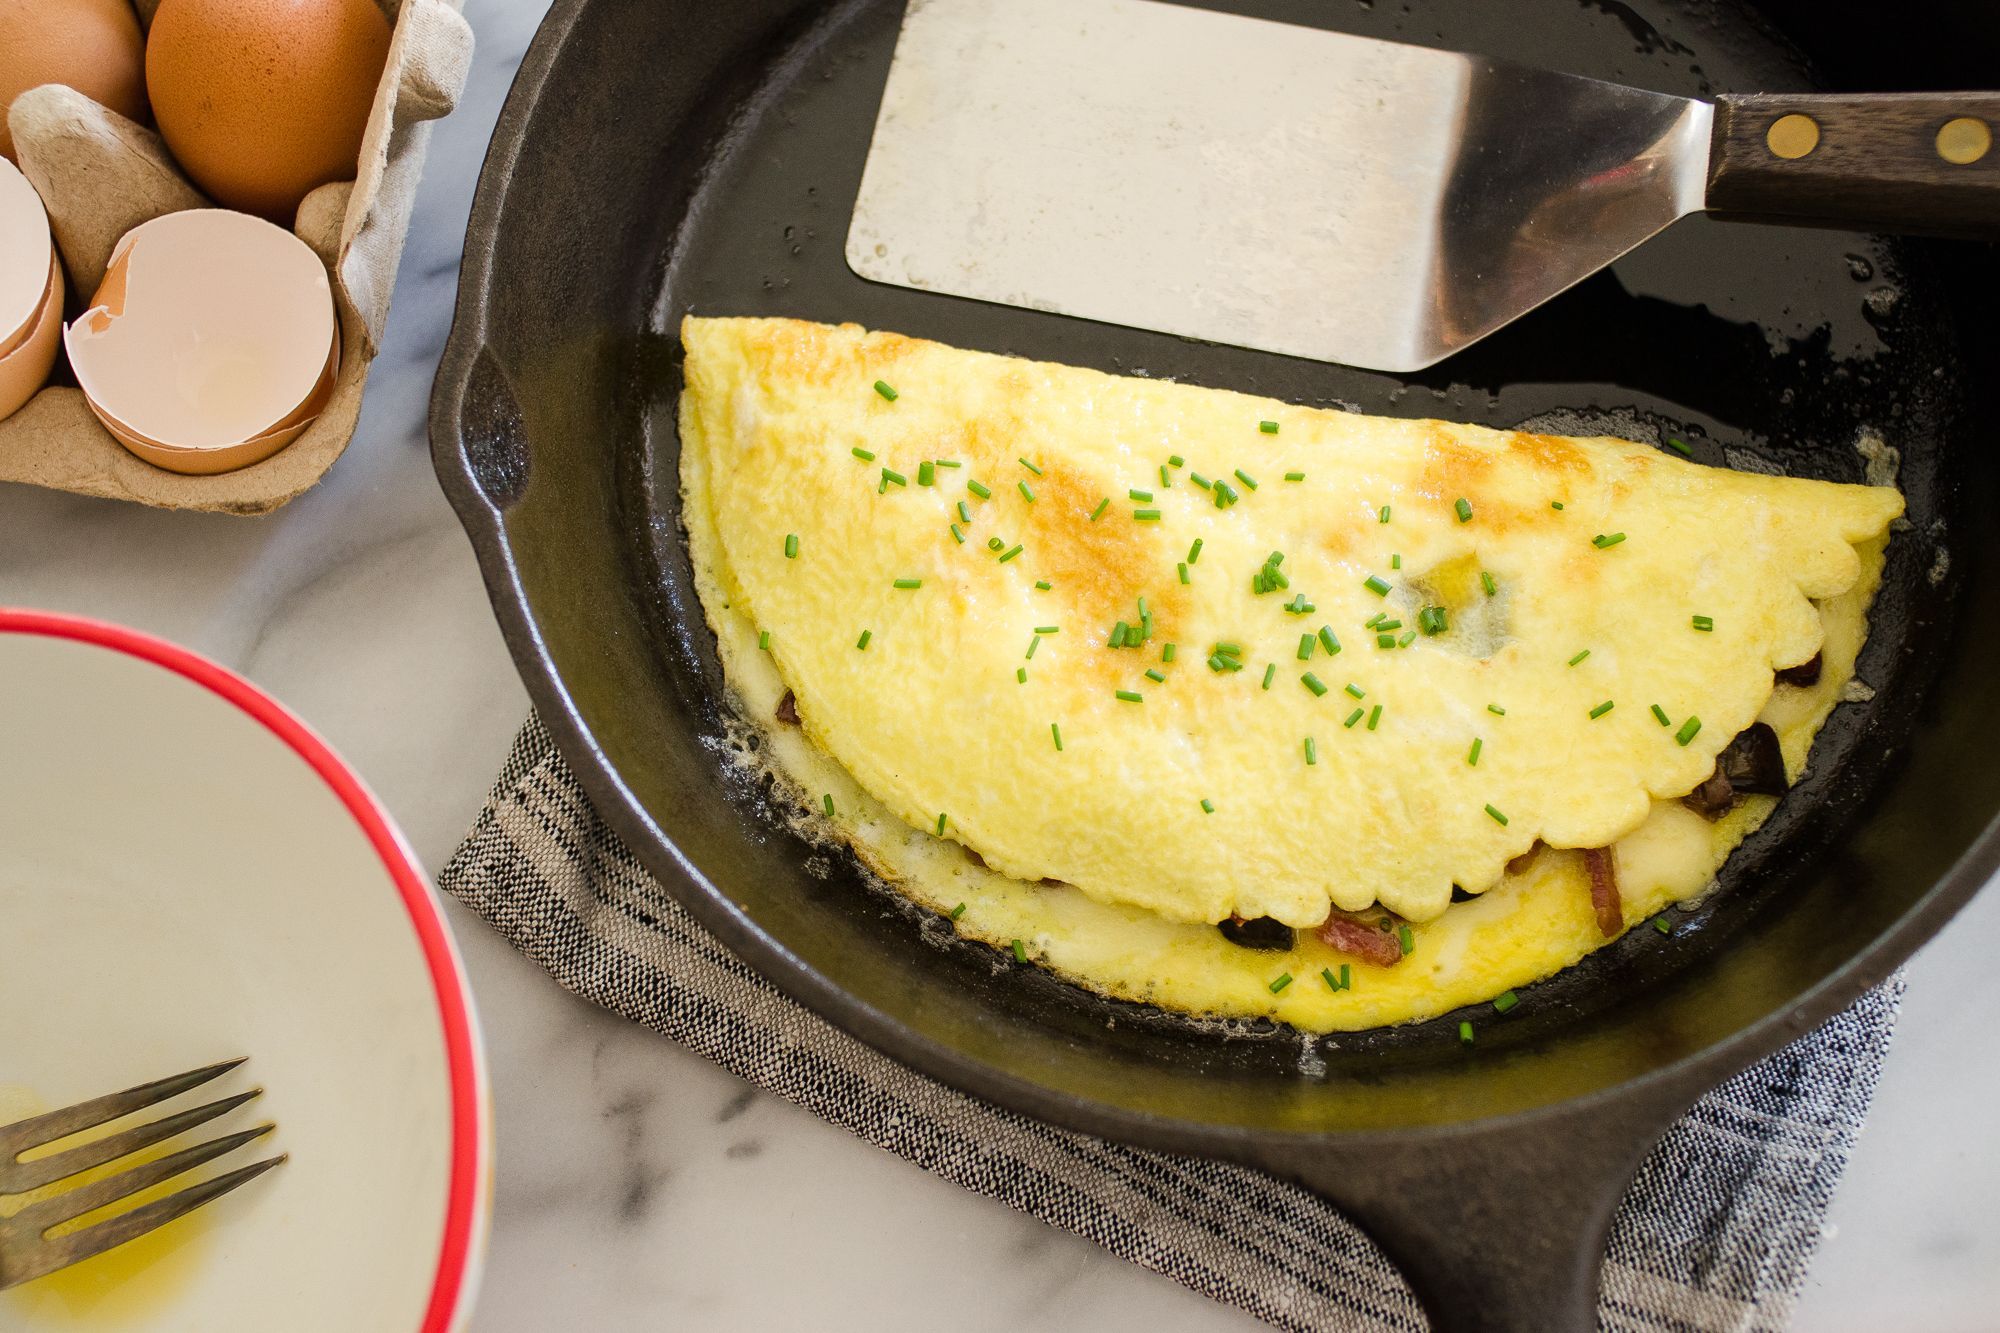 https://hips.hearstapps.com/hmg-prod/images/how-to-make-an-omelette-1590503019.jpg